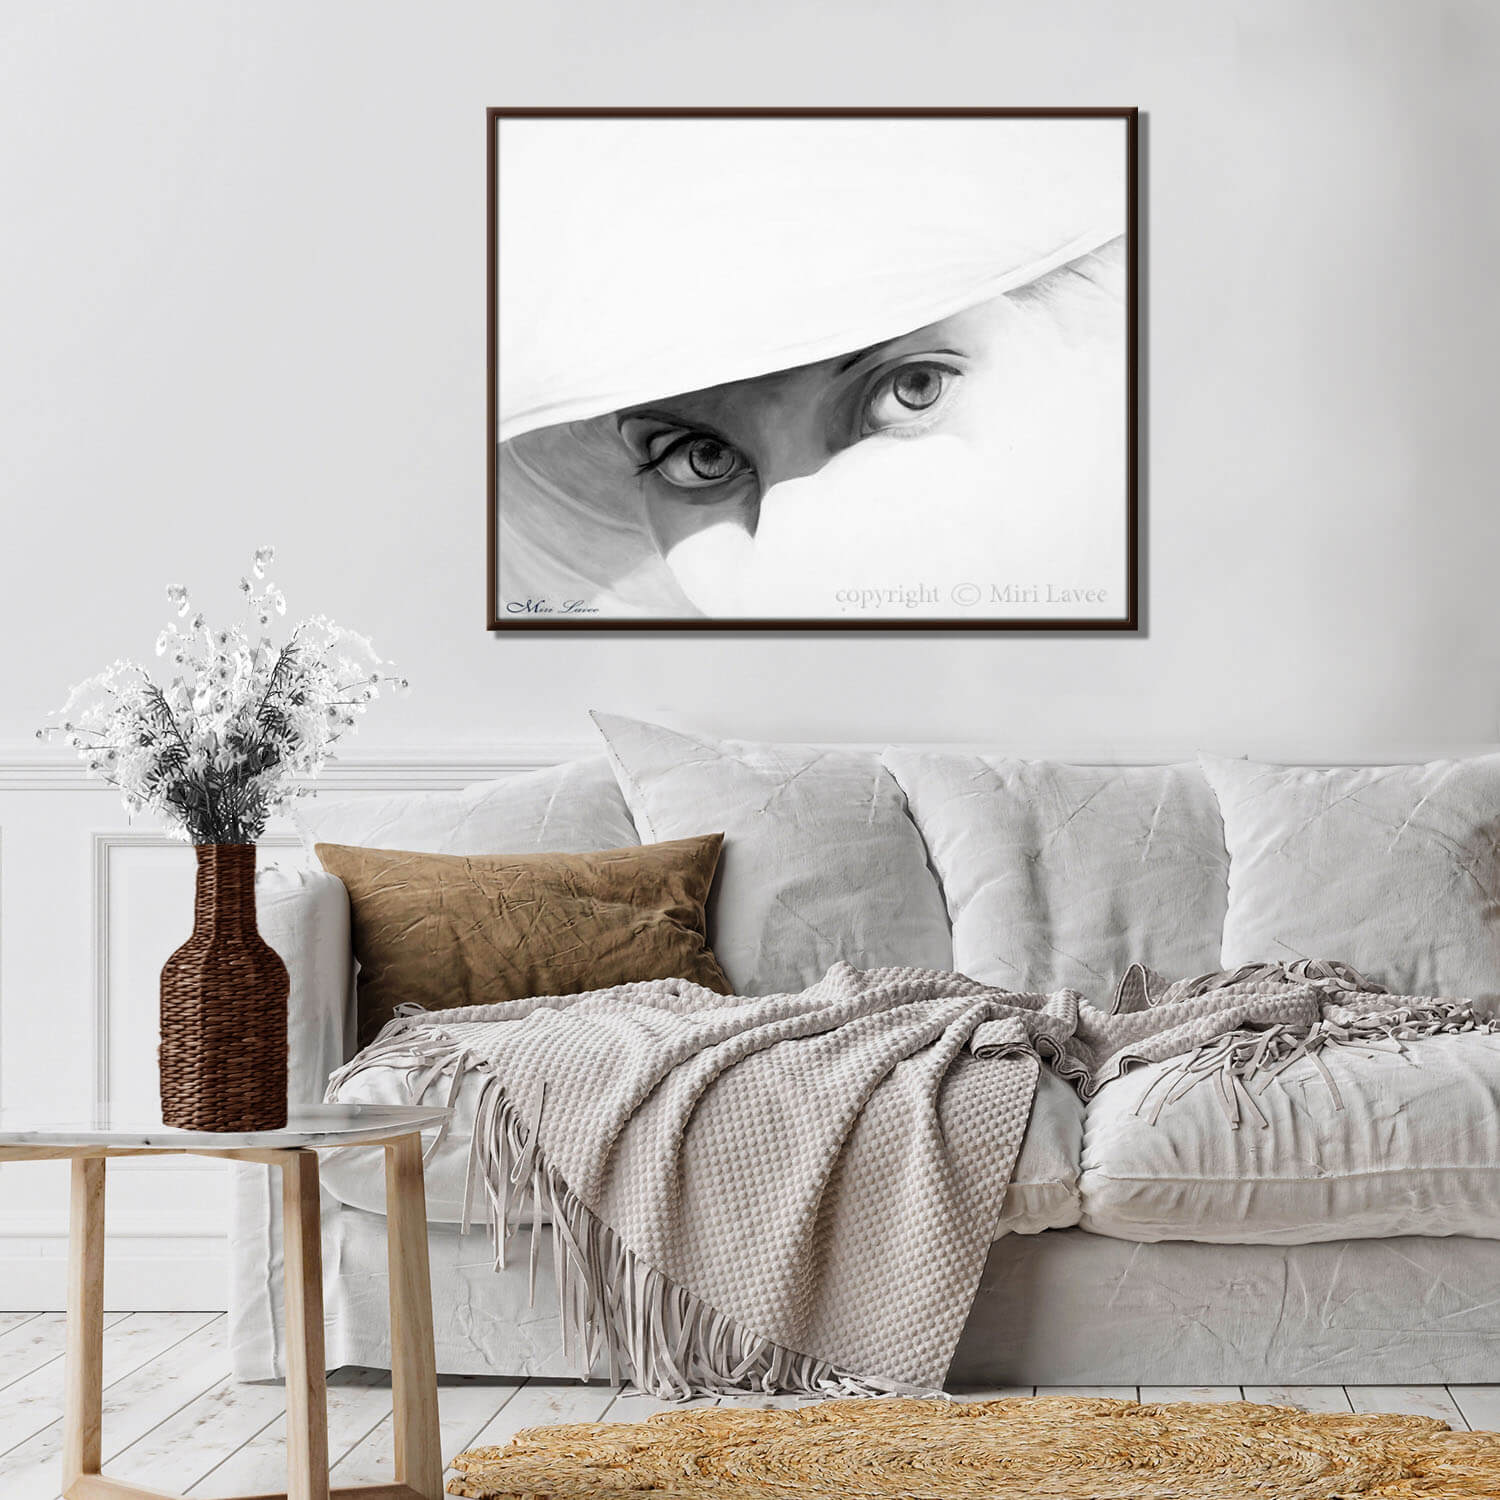 ציור של עיניים בצבעי שמן אפורים על רקע לבן צל על עיניה תמונה גדולה בסלון מעוצב ציירת מירי לביא